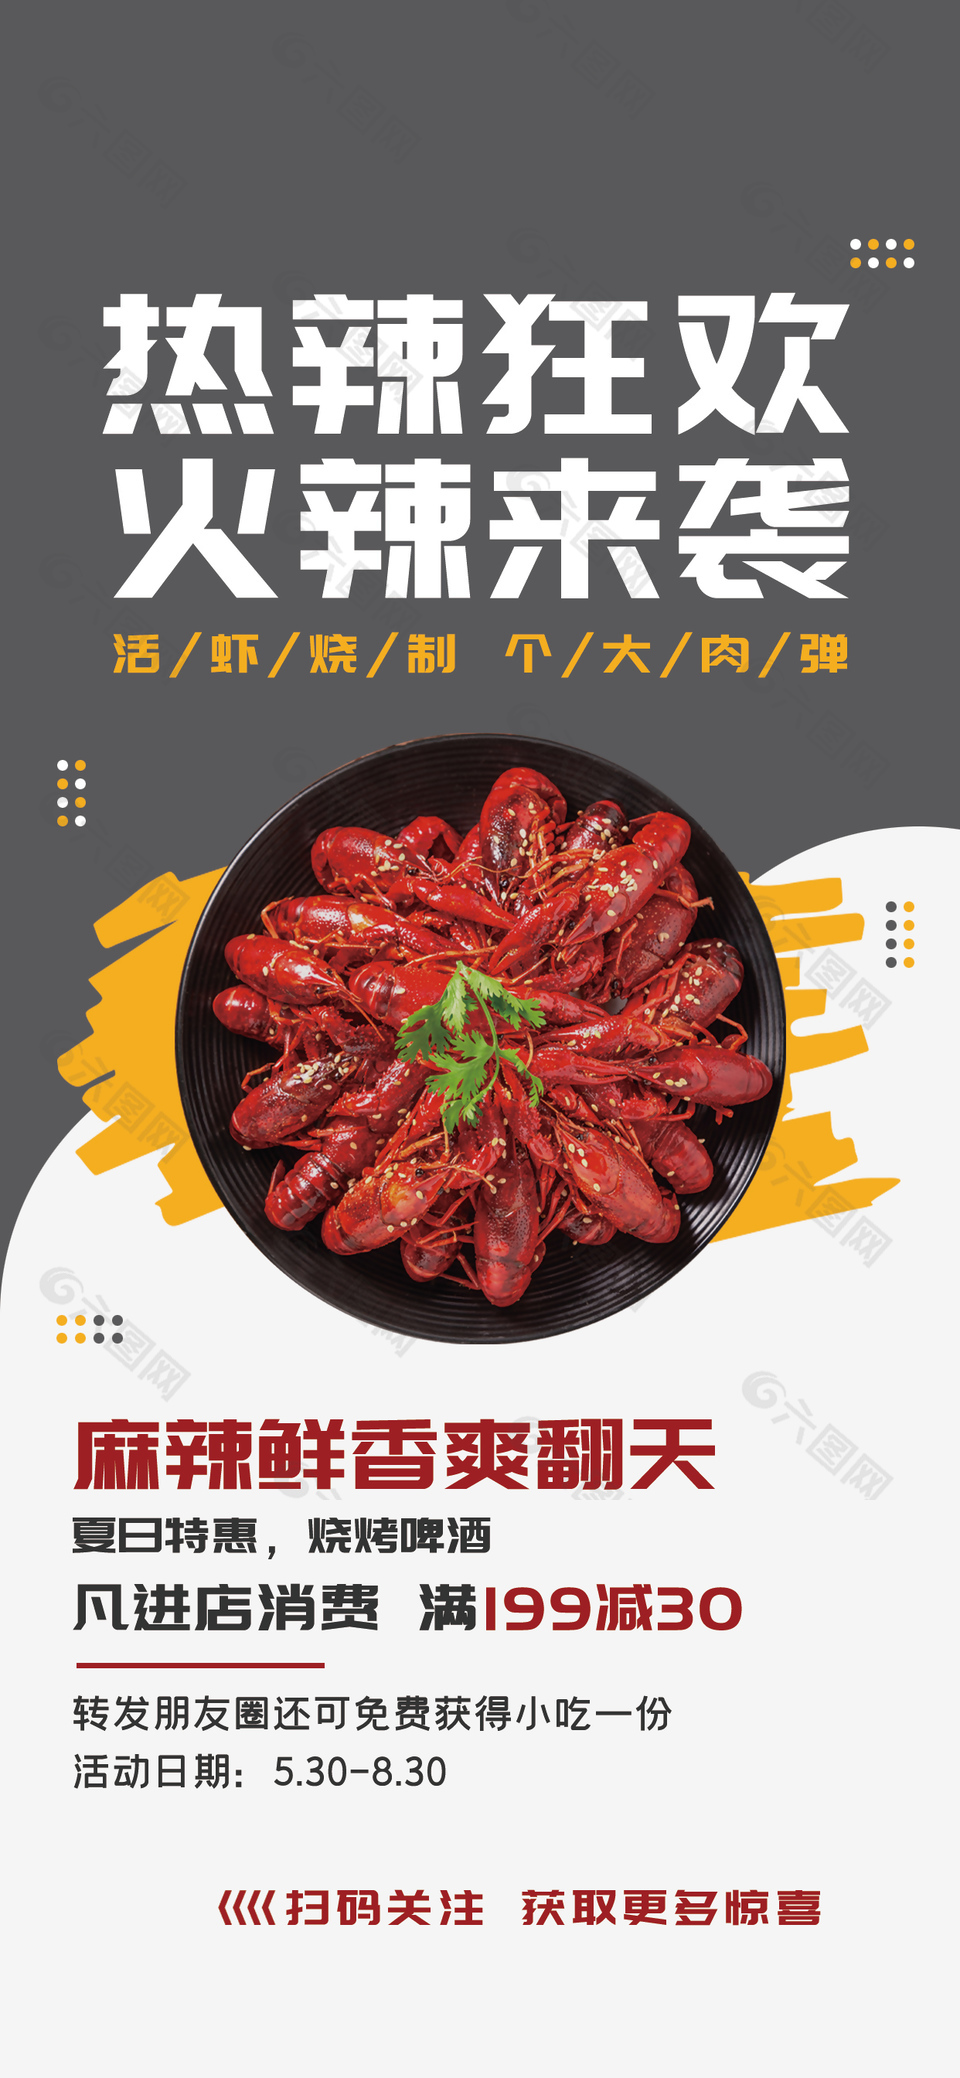 夏日特惠麻辣鲜香小龙虾活动促销海报